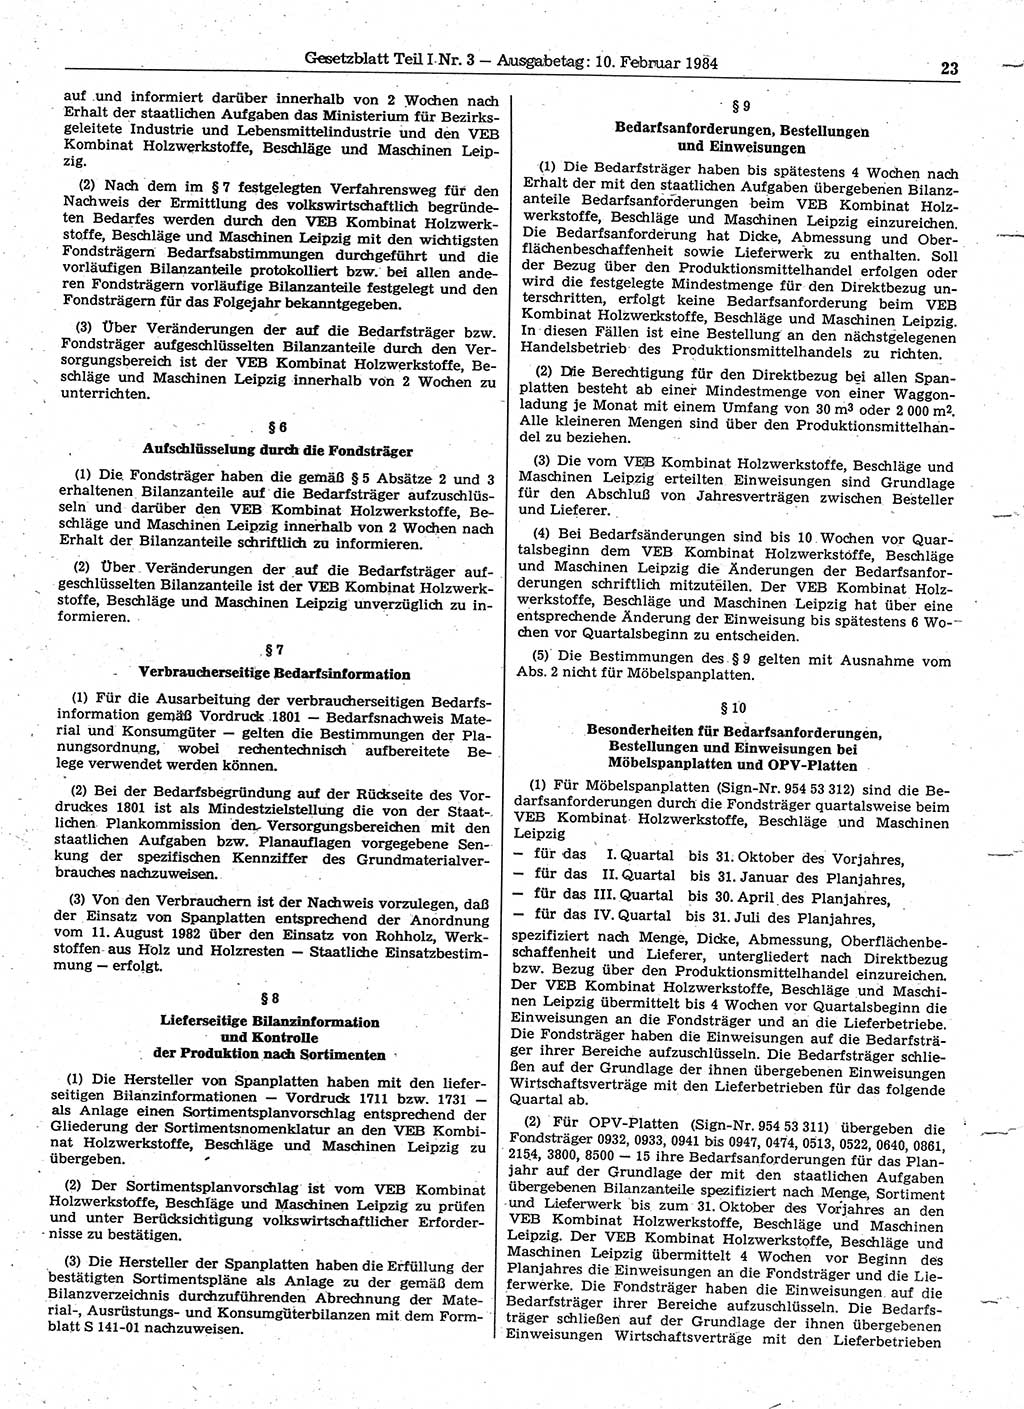 Gesetzblatt (GBl.) der Deutschen Demokratischen Republik (DDR) Teil Ⅰ 1984, Seite 23 (GBl. DDR Ⅰ 1984, S. 23)